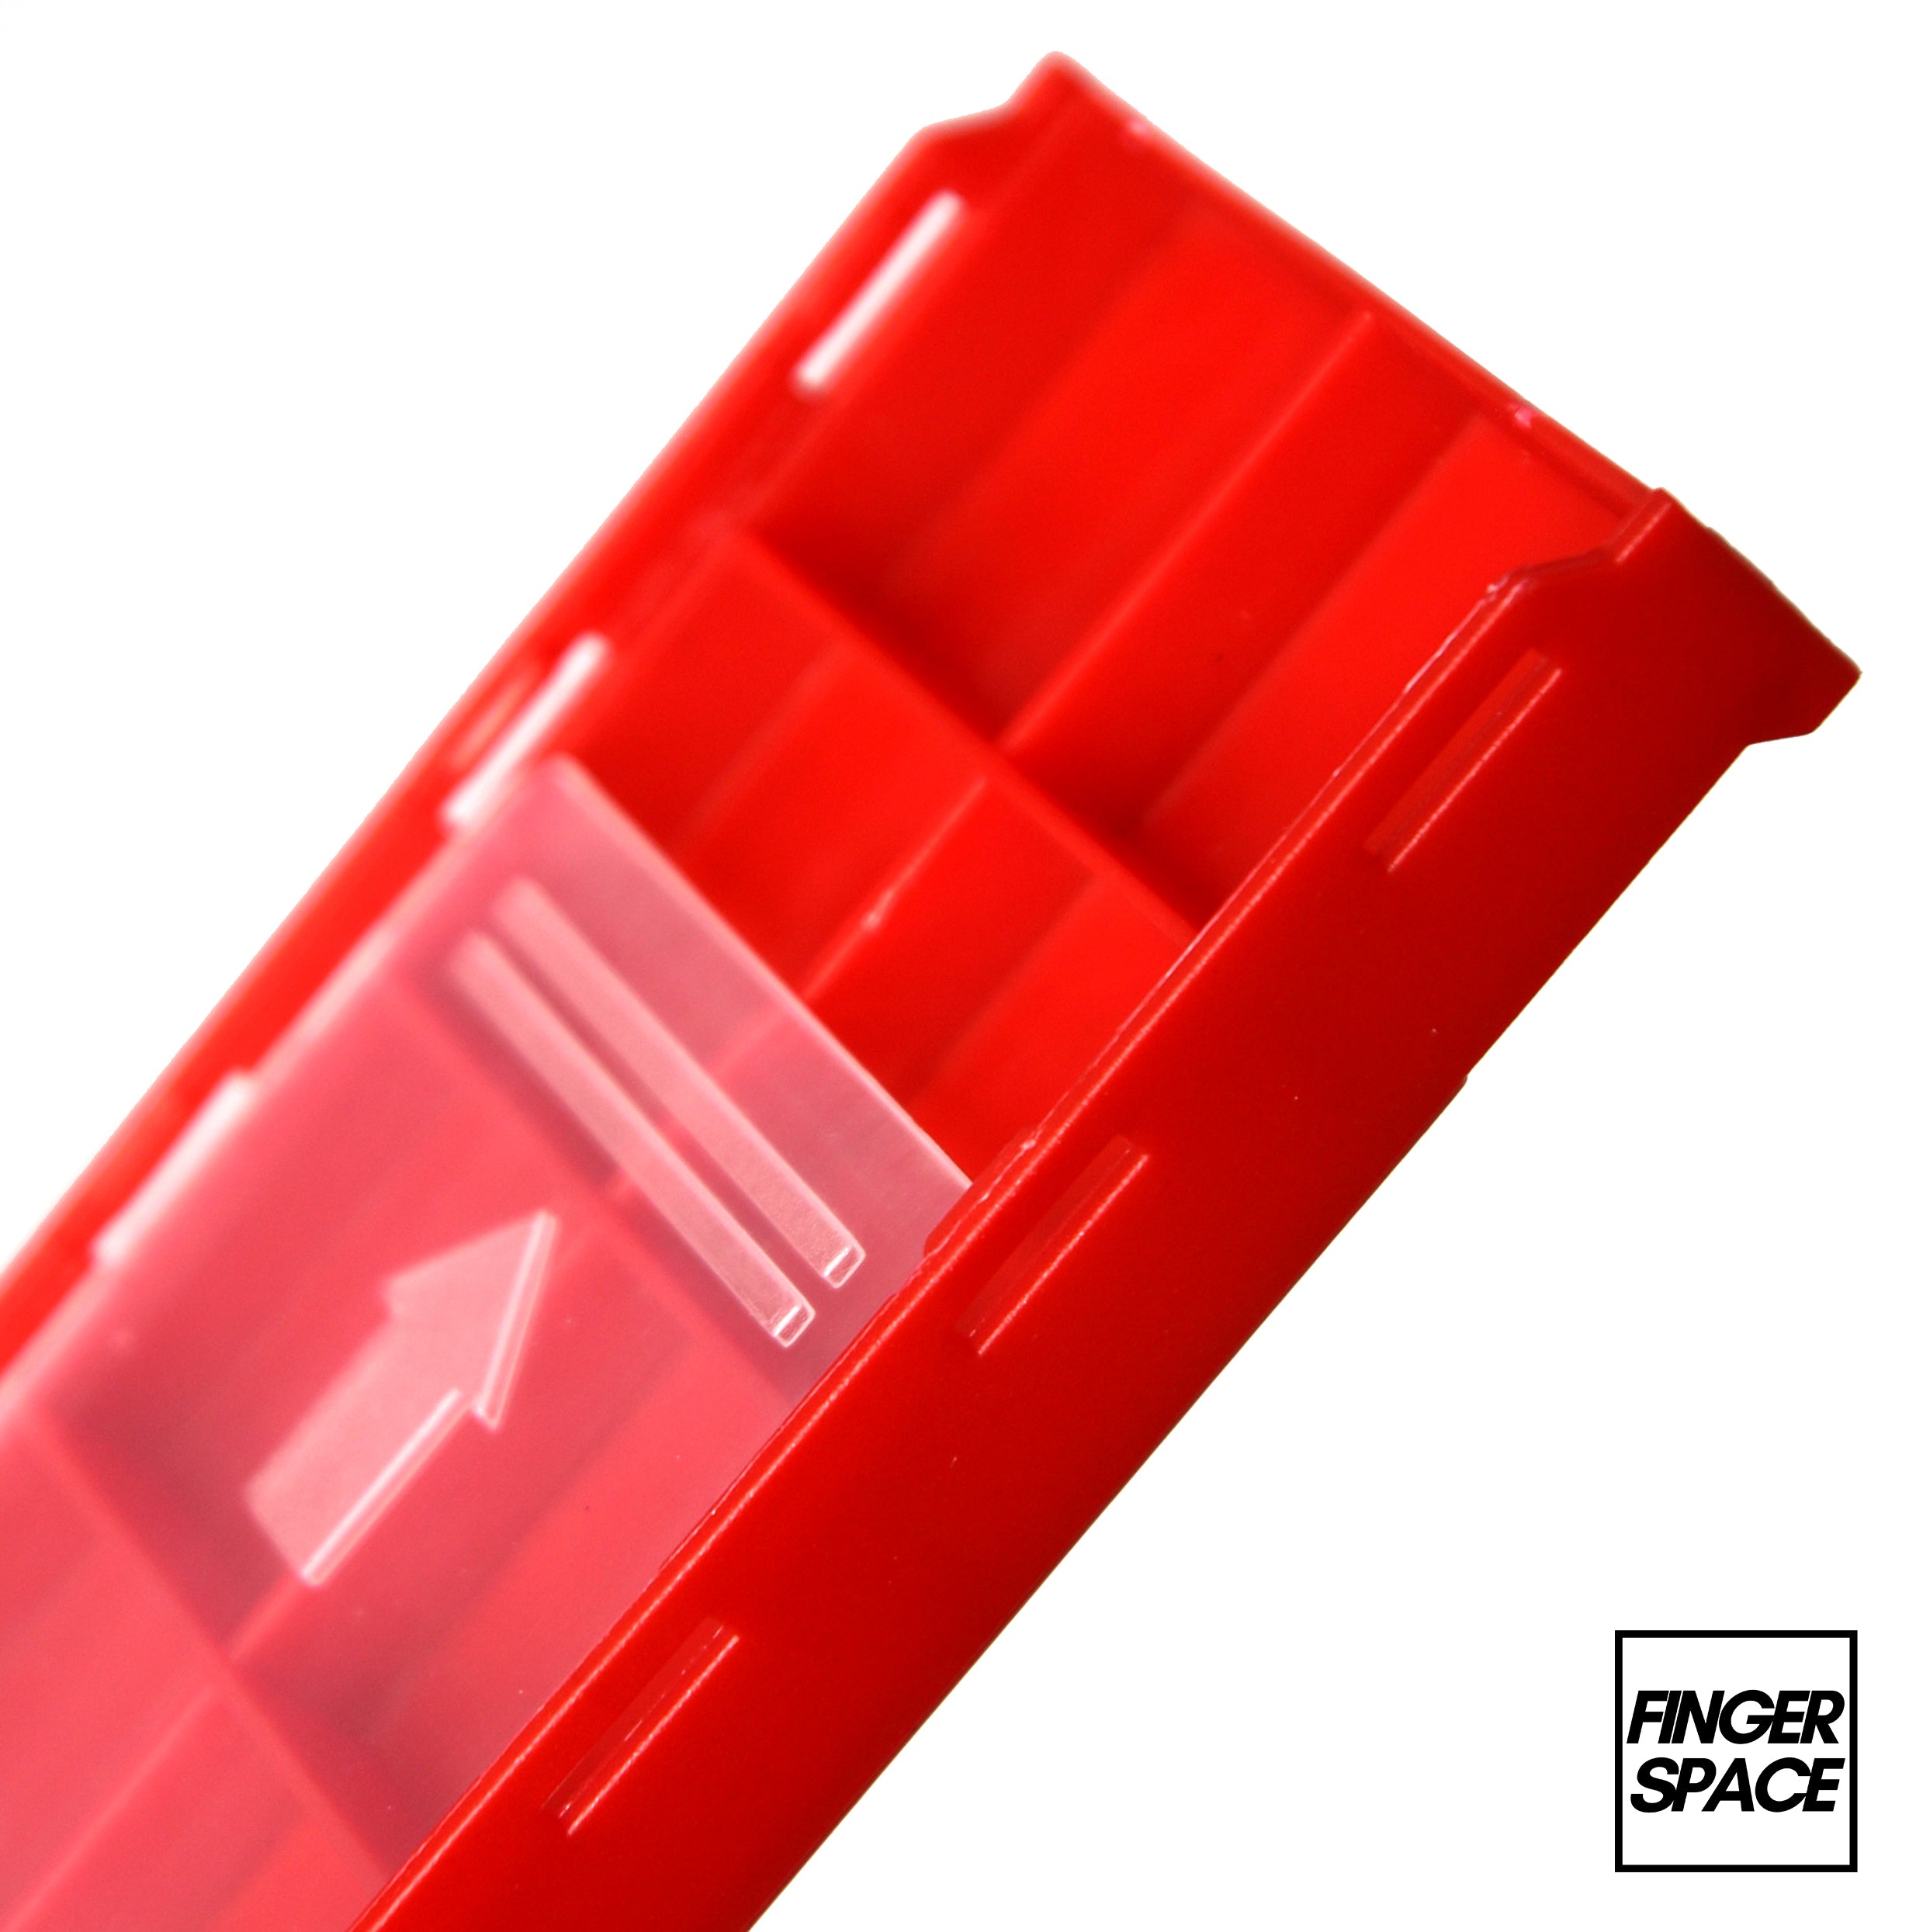 Red "Space Case" - Modular Stacking Storage Box